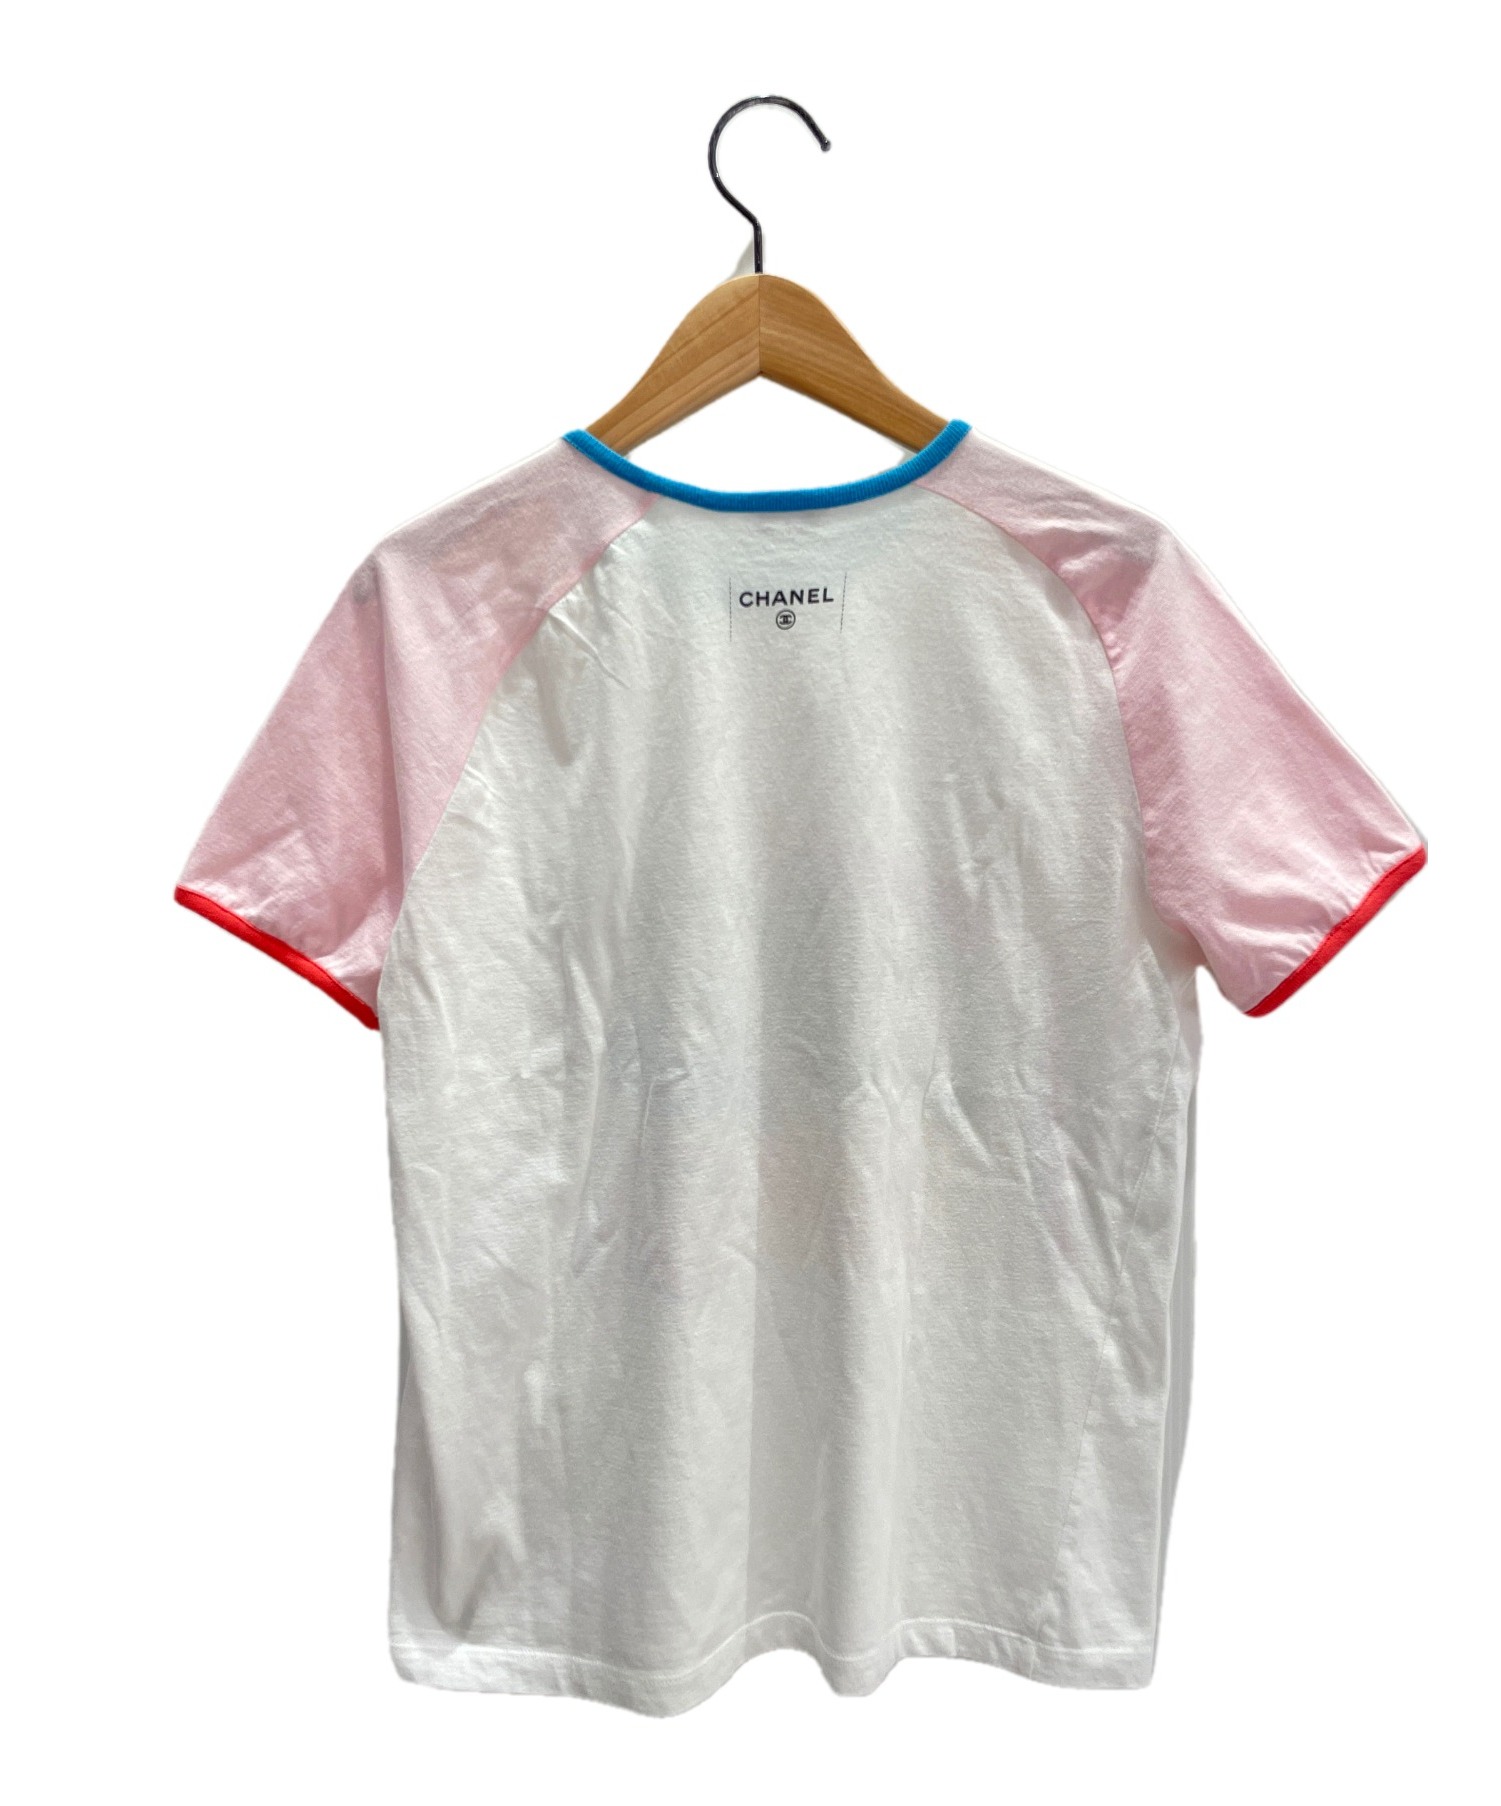 CHANEL (シャネル) CUBA Tシャツ ホワイト サイズ:S